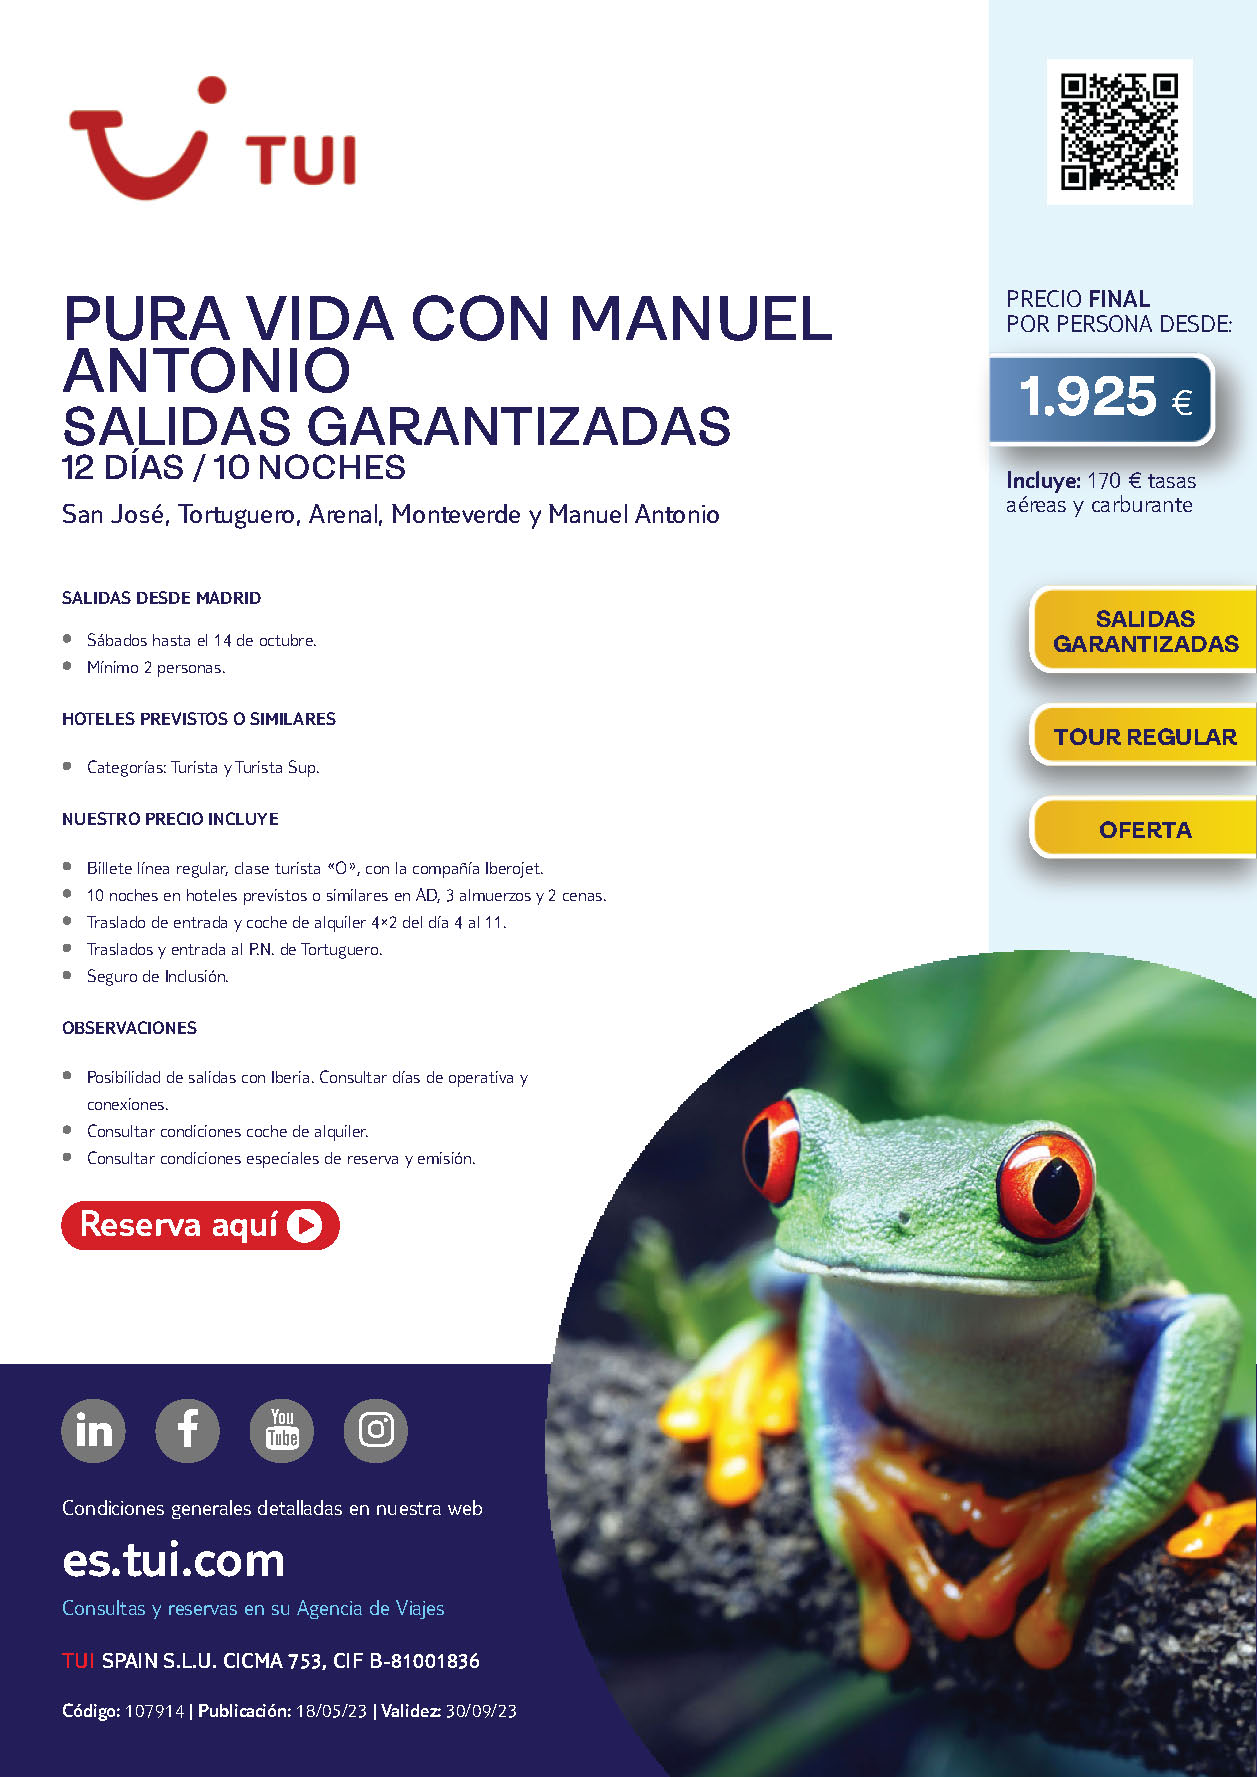 Oferta TUI circuito Peru Costa Rica con Manuel Antonio 12 dias salidas Agosto Septiembre Octubre 2023 desde Madrid vuelos Iberojet